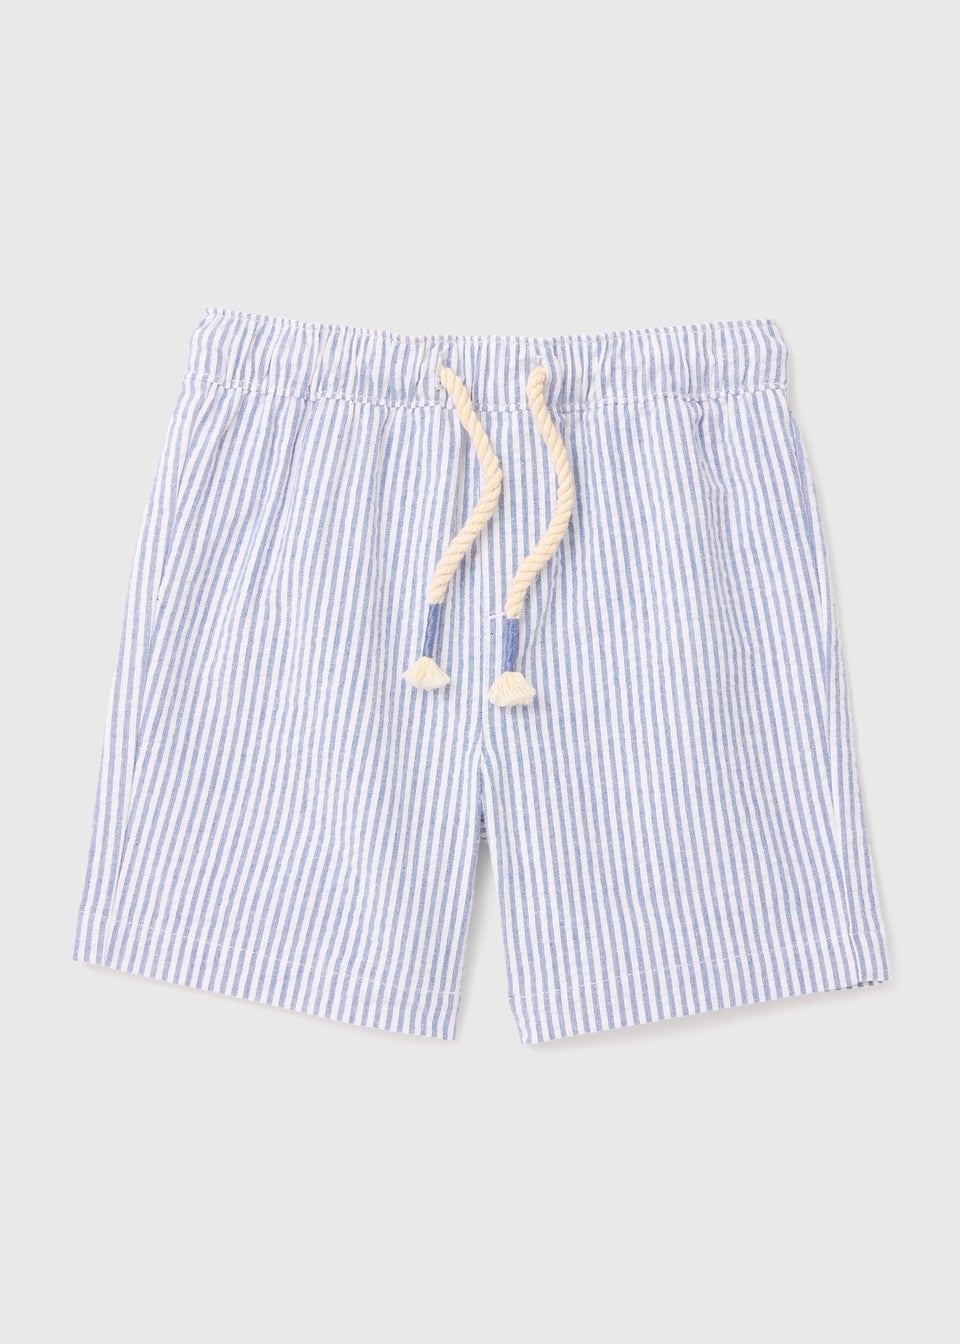 Boys Shorts | Denim, Chino & Linen Shorts for Boys - Matalan